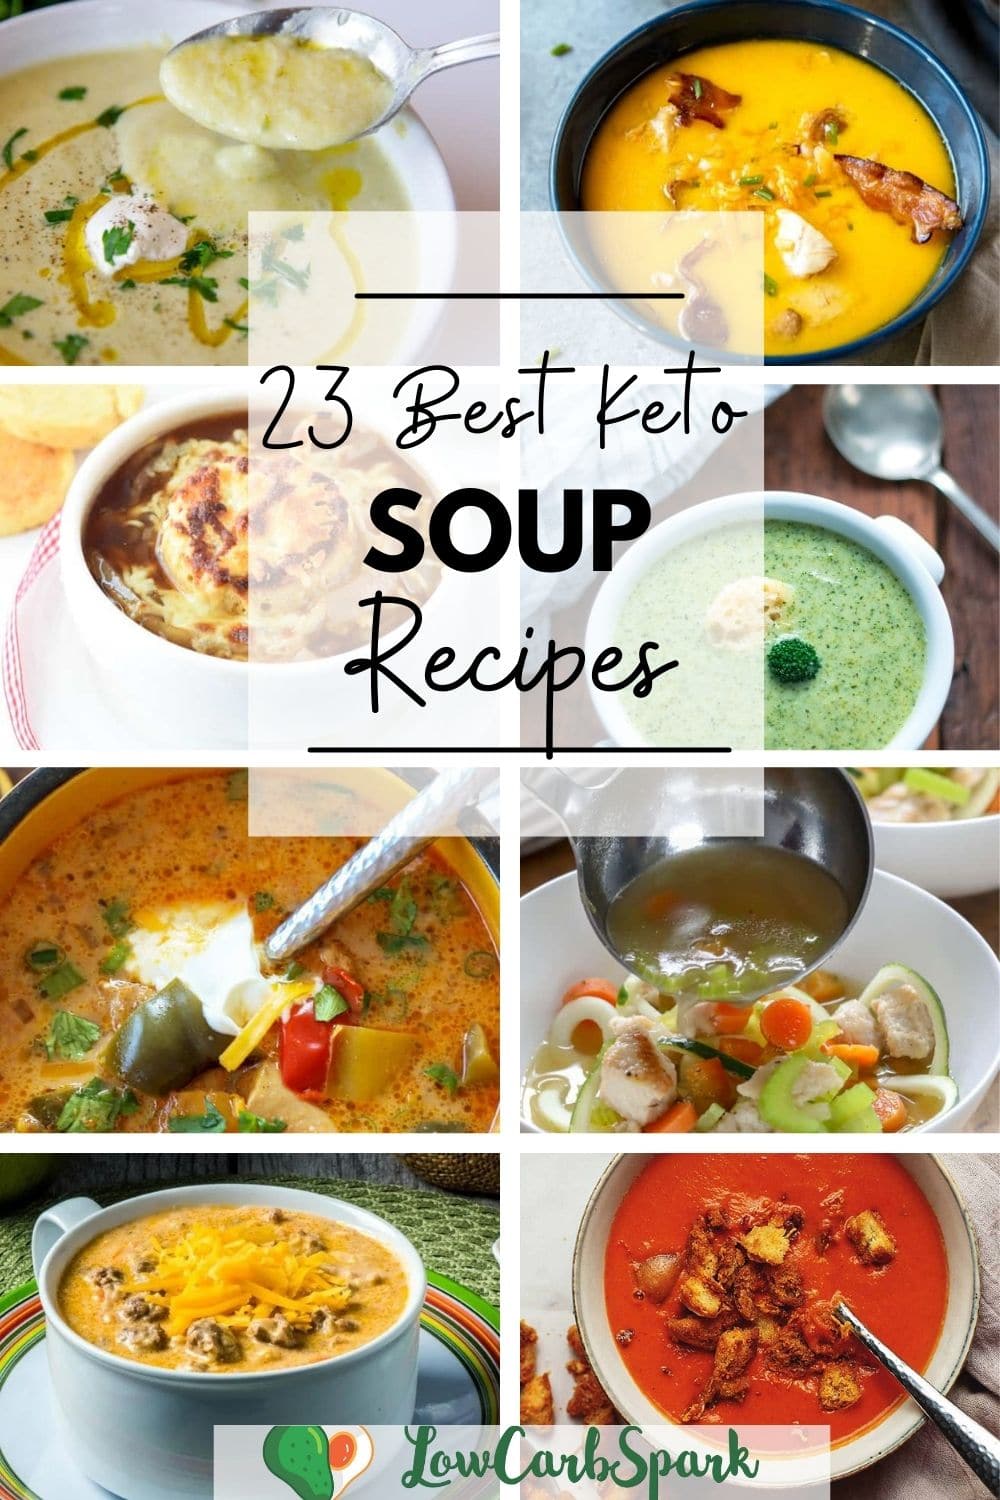 26 Keto Soup Recipes - Best Low Carb Soups